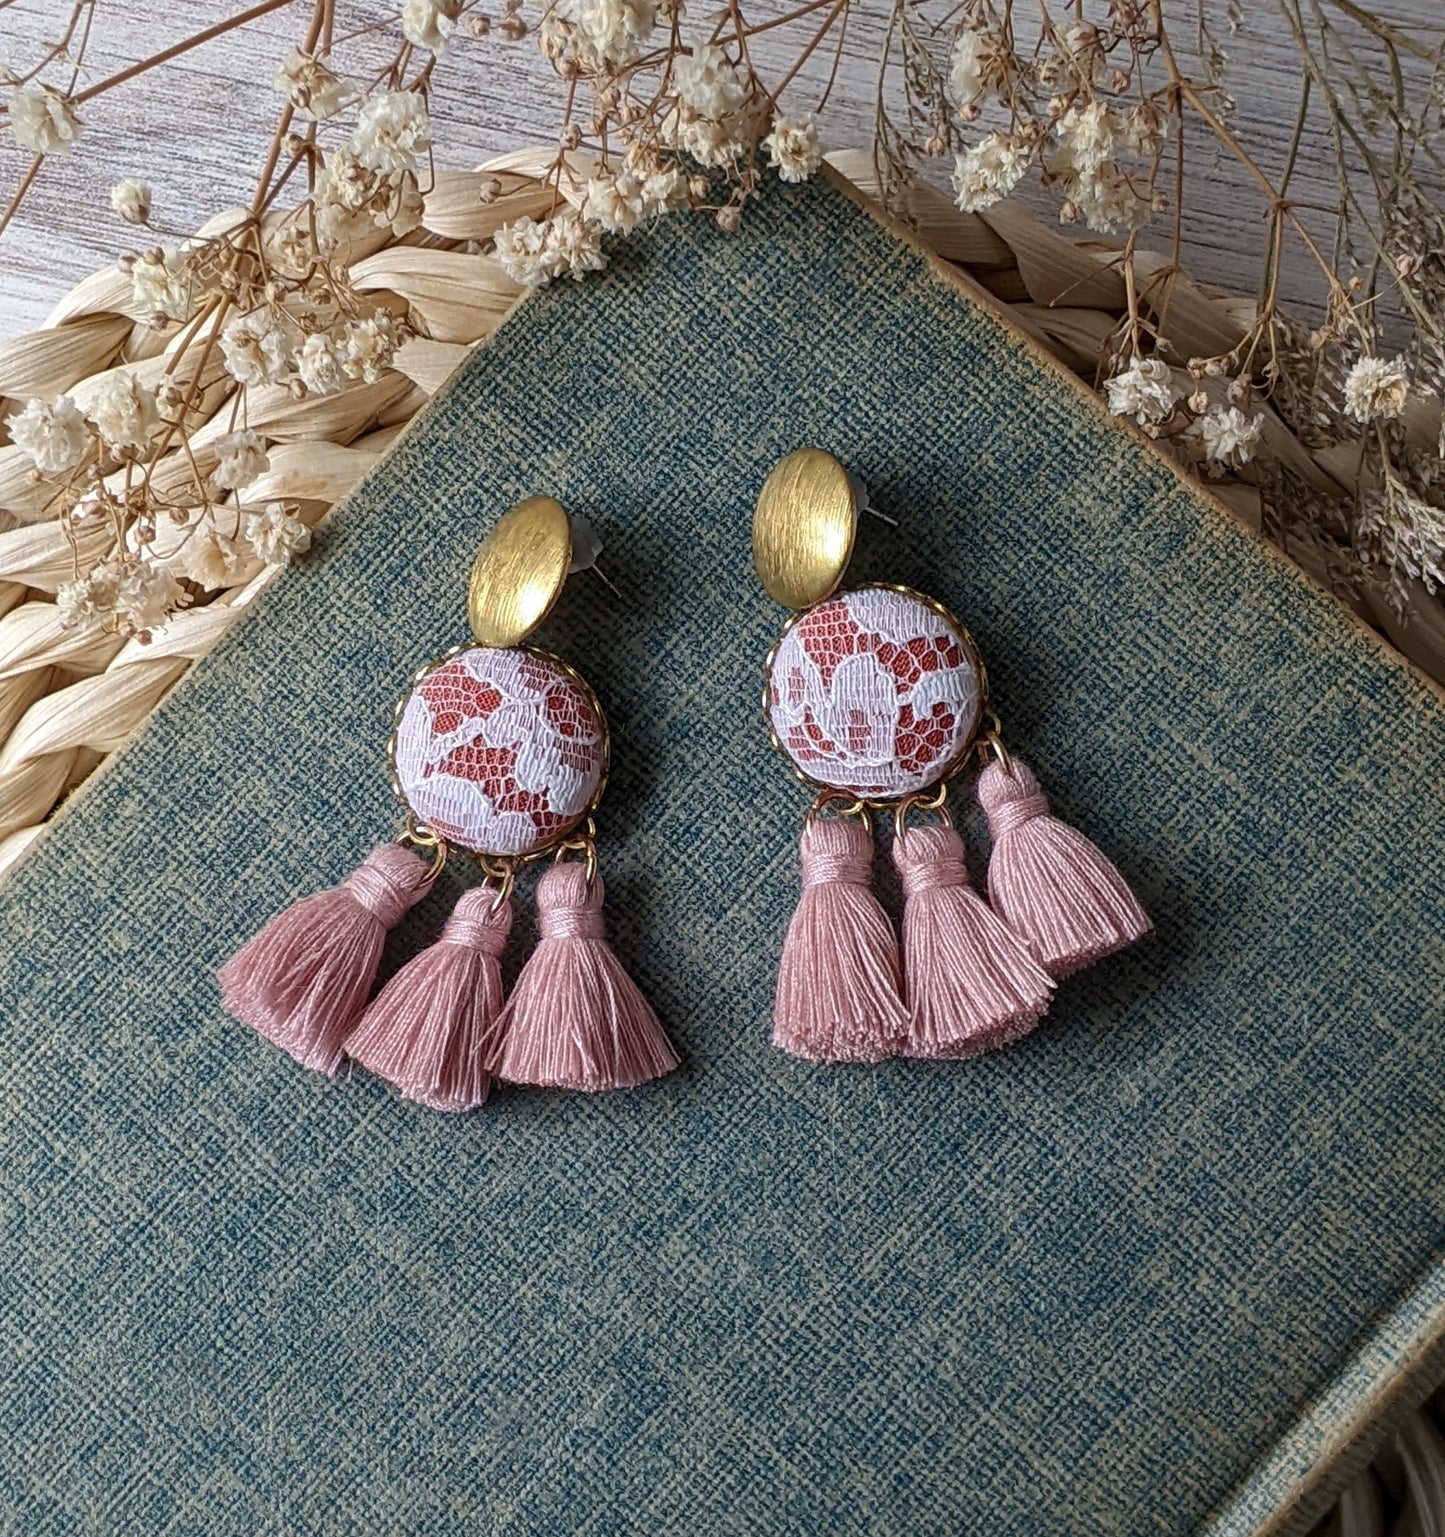 Vintage Lace Tassel Earrings - Terracotta Orange, Pastel Pink, Gold Brass